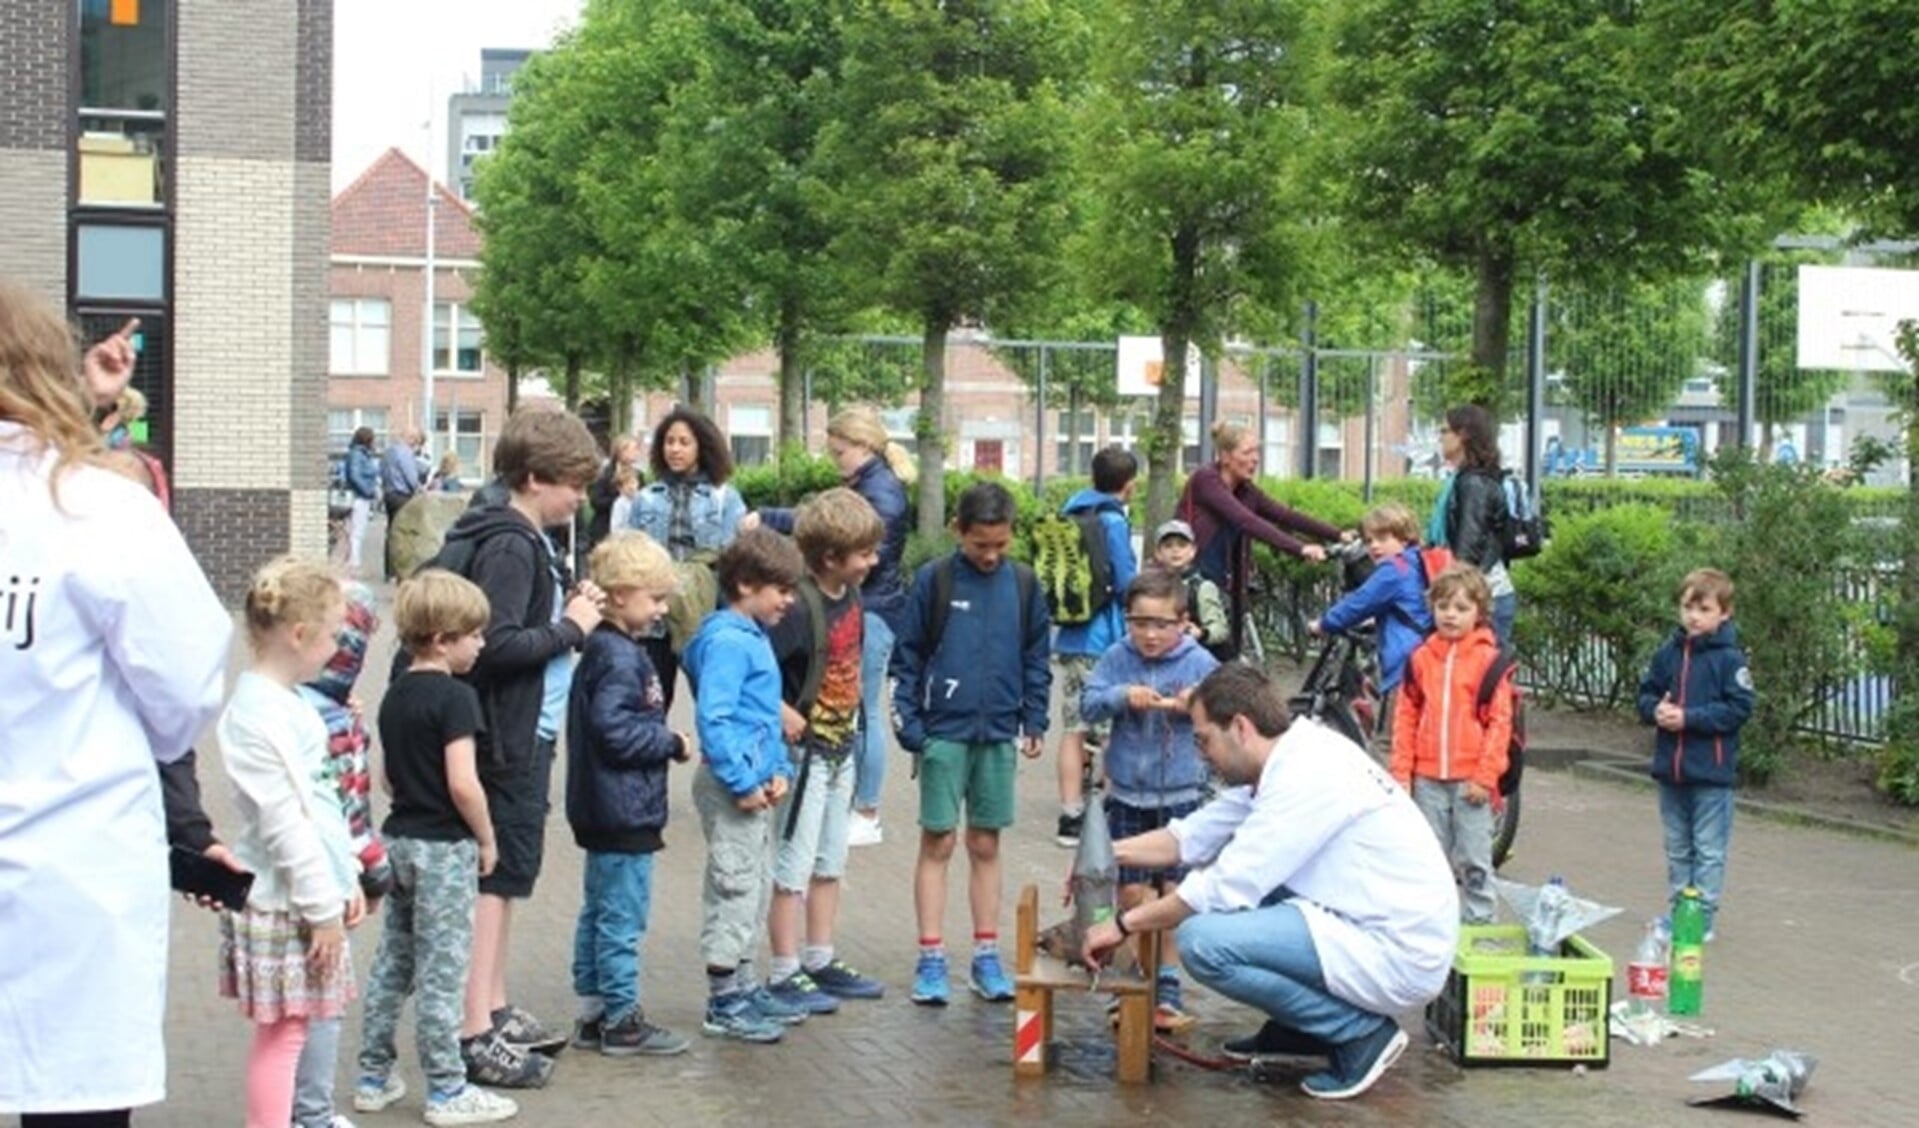 Met 'waterraketten' die tientallen meters de lucht in werden geschoten, hebben kinderen in Delfshaven een alternatief voor de traditionele buitenschoolse opvang gelanceerd: eisvrij! 